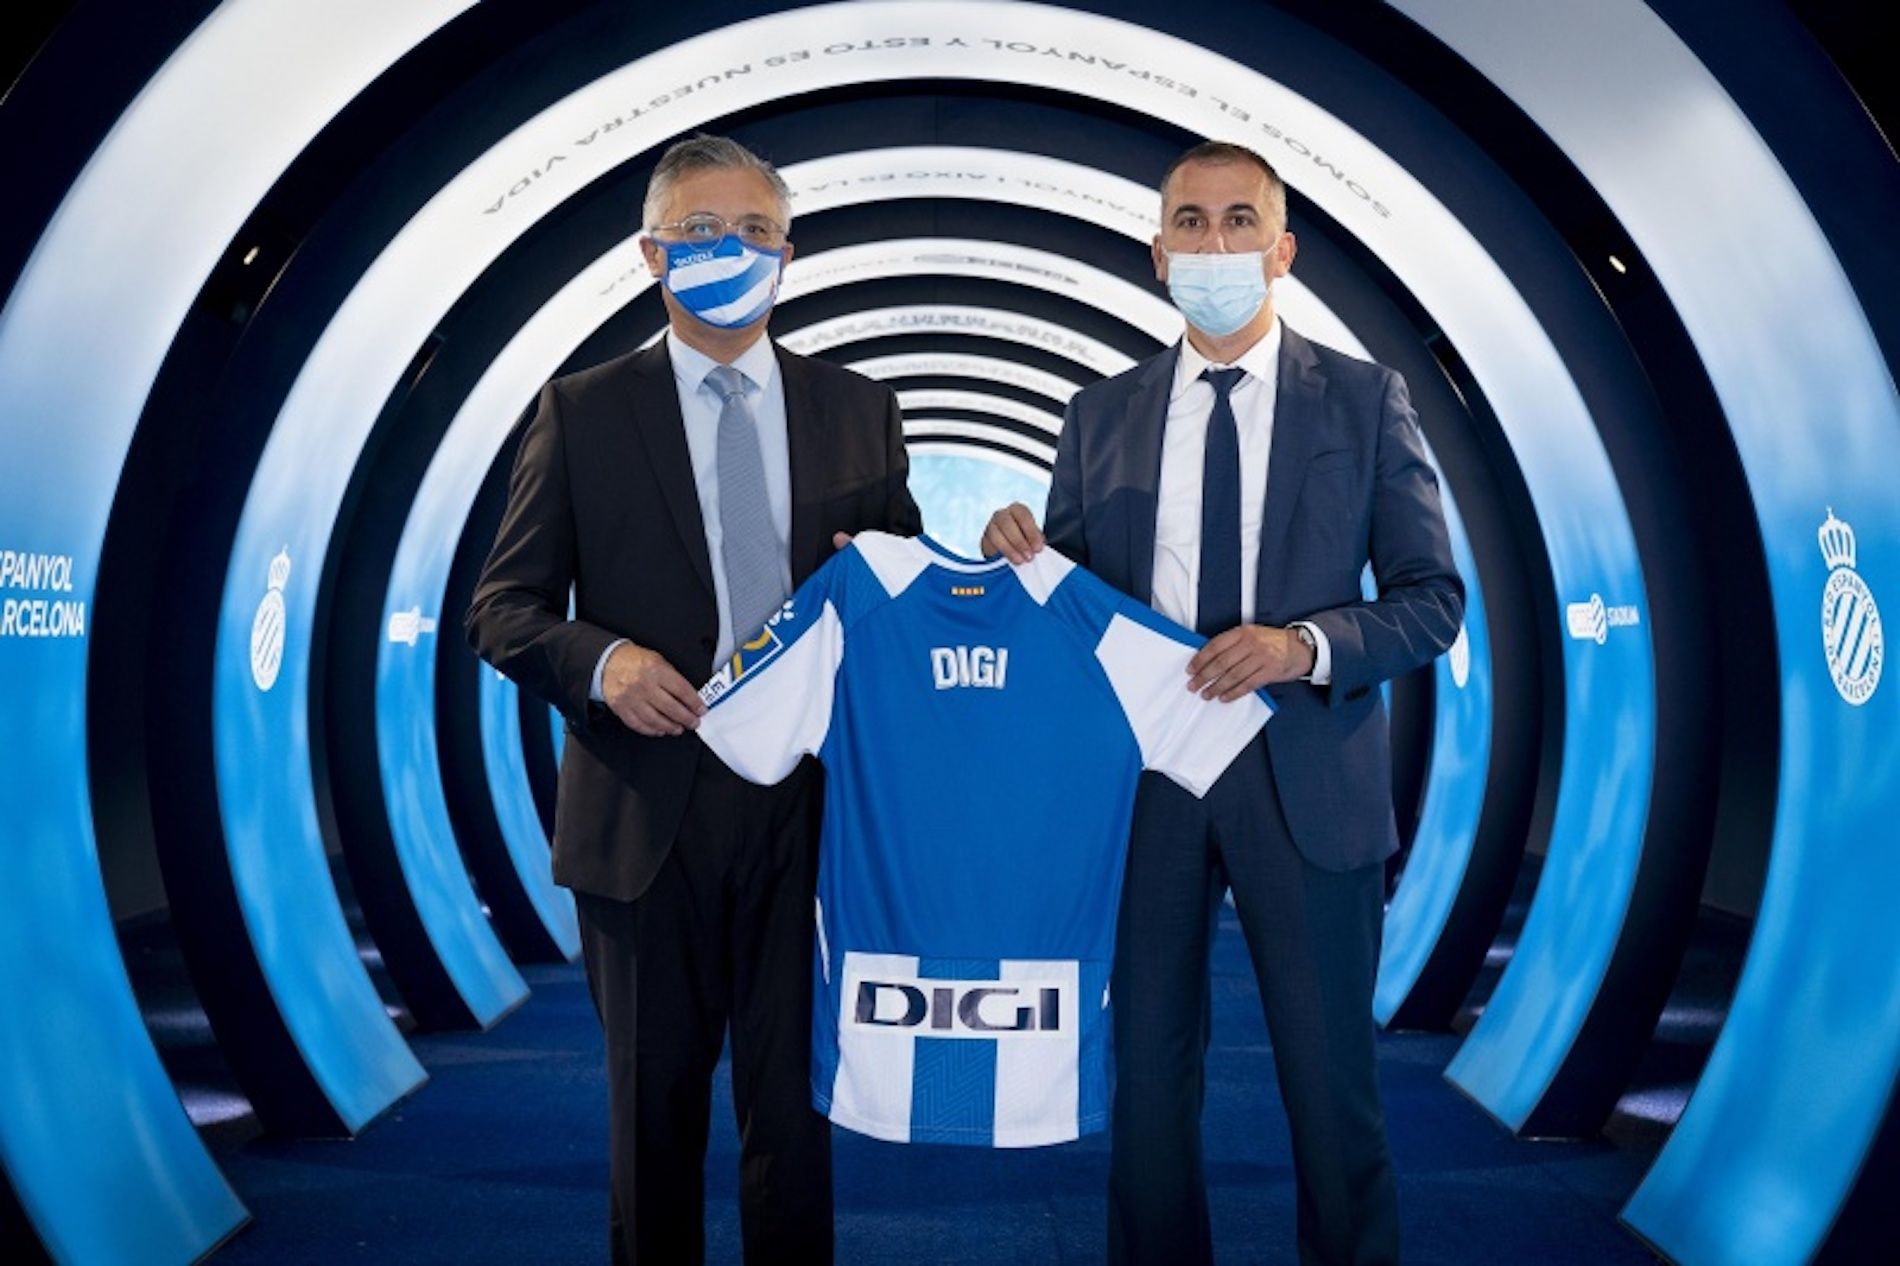 El Real Oviedo firma a Digi como patrocinador principal h